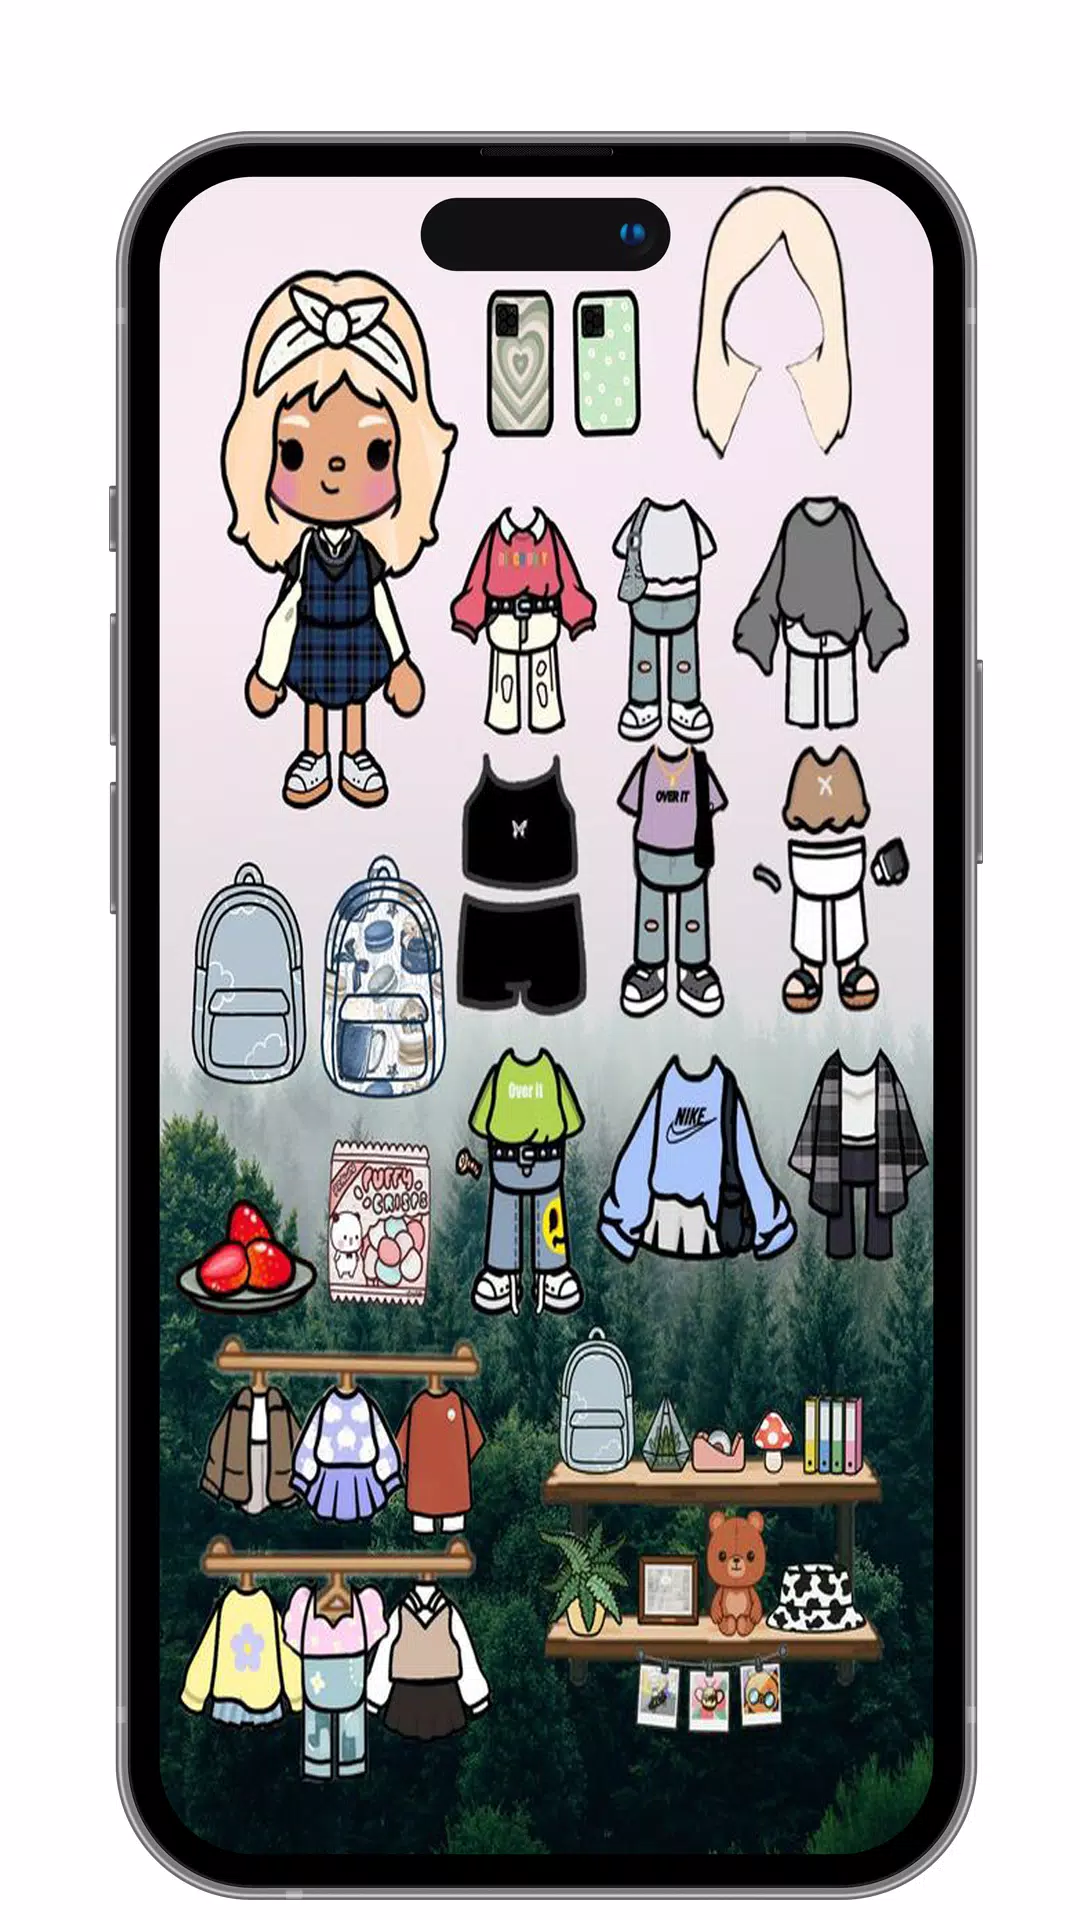 Toca boca Paper Doll Ideas – Apps no Google Play